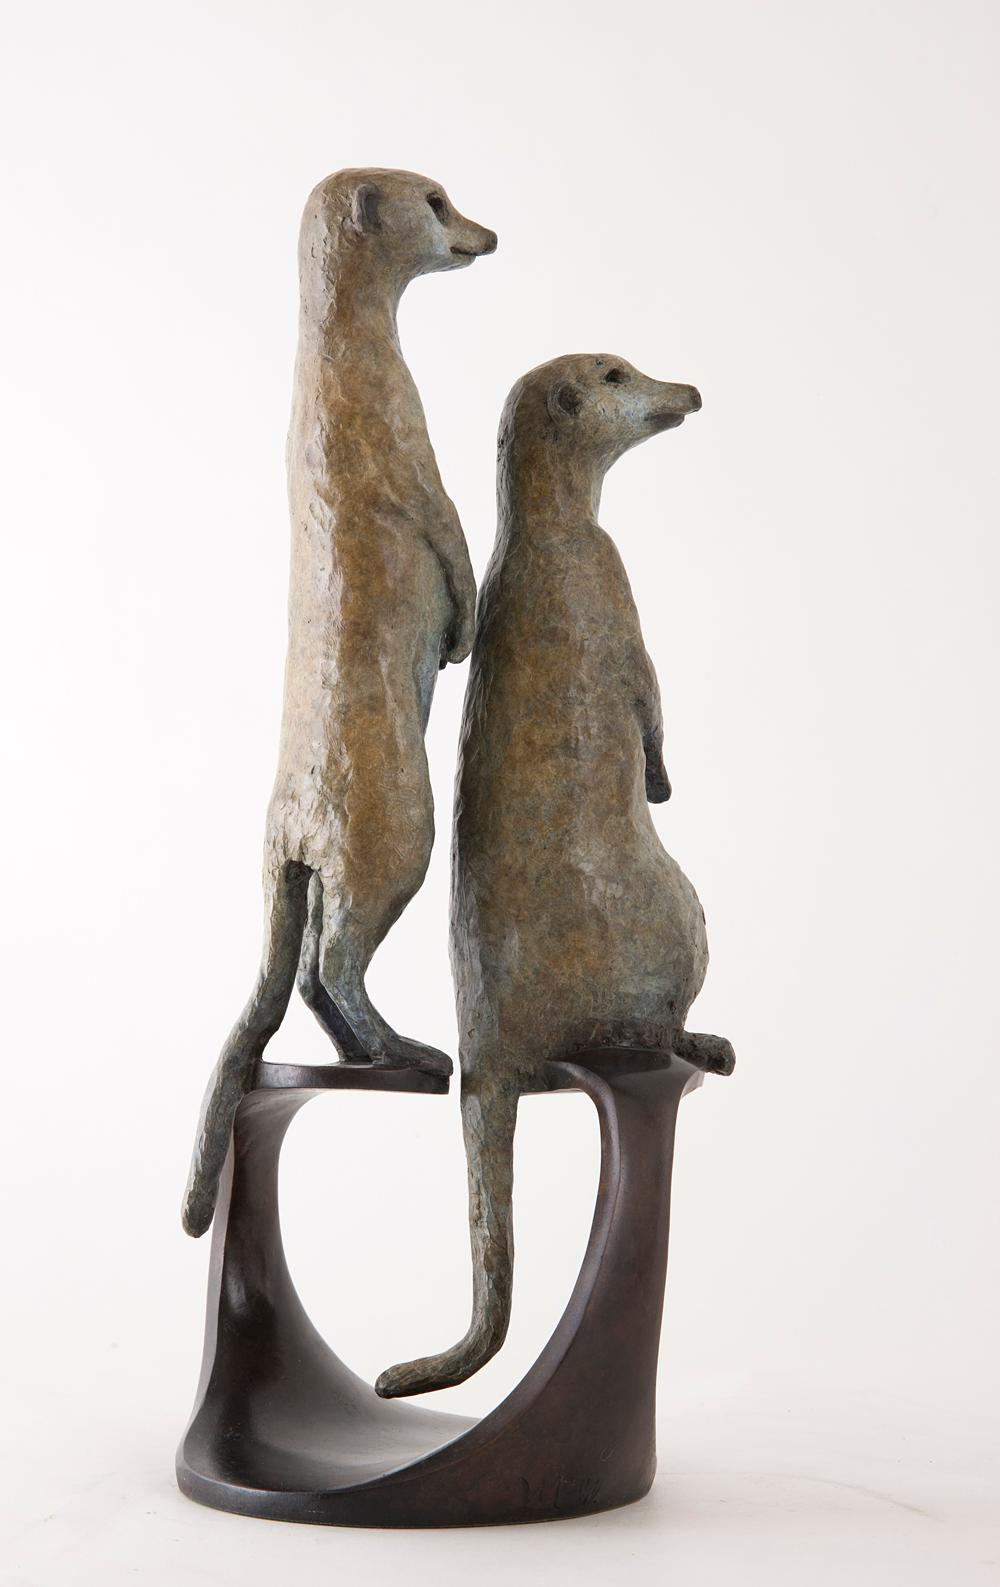 Meerkats - Naturalistic Sculpture by Vivien Mallock